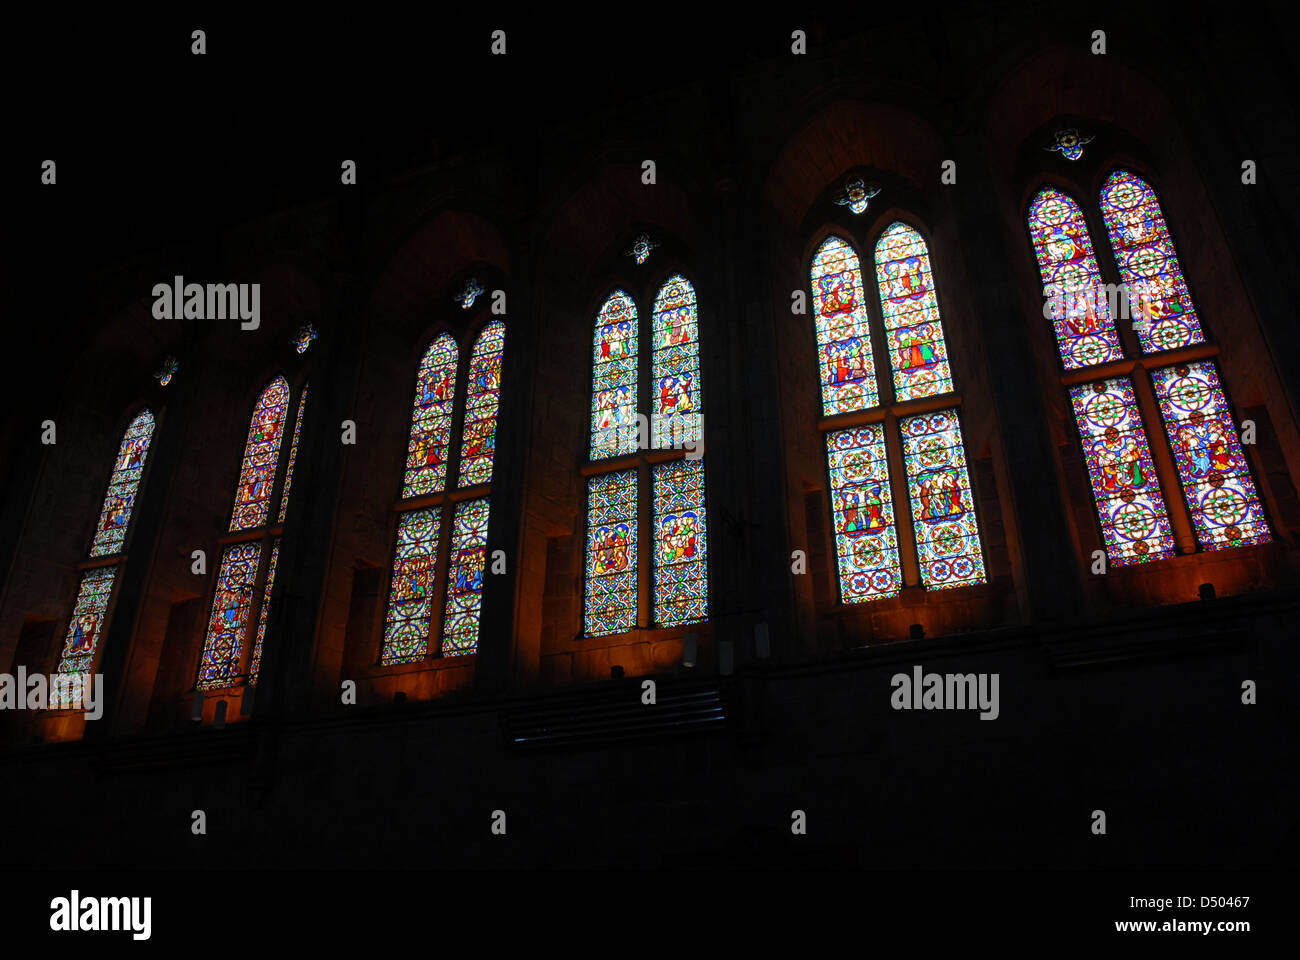 Les six fenêtres du Sud, église du prieuré, Bolton Abbey, Yorkshire, Angleterre, Royaume-Uni Banque D'Images